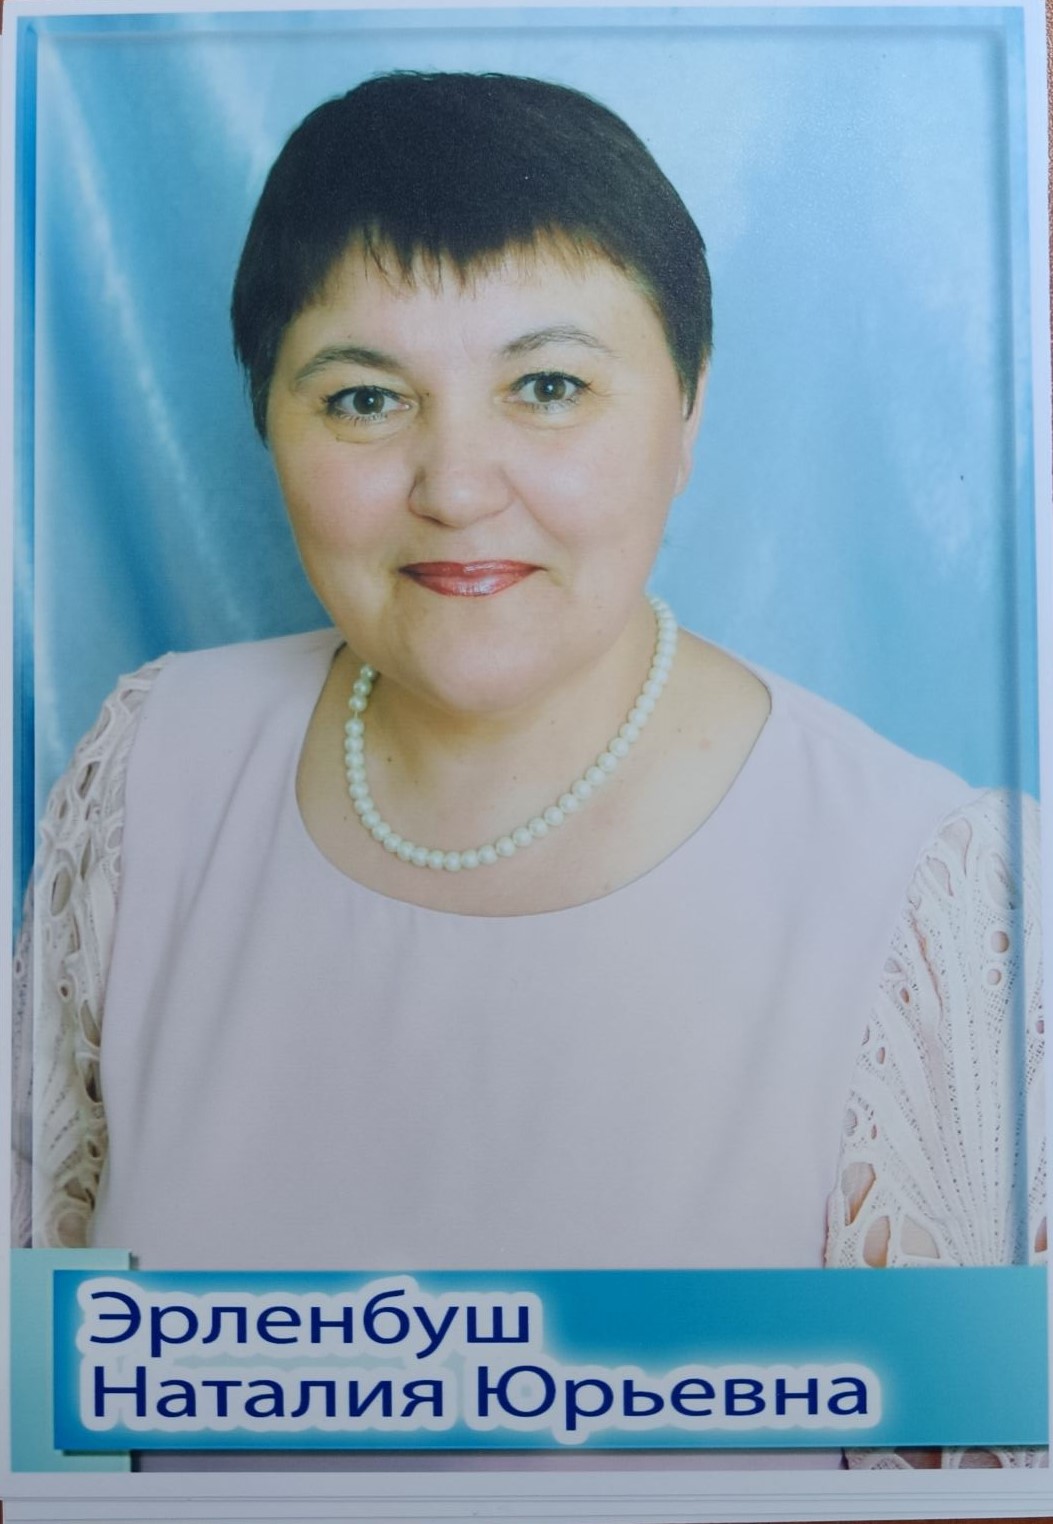 Эрленбуш Наталия Юрьевна.